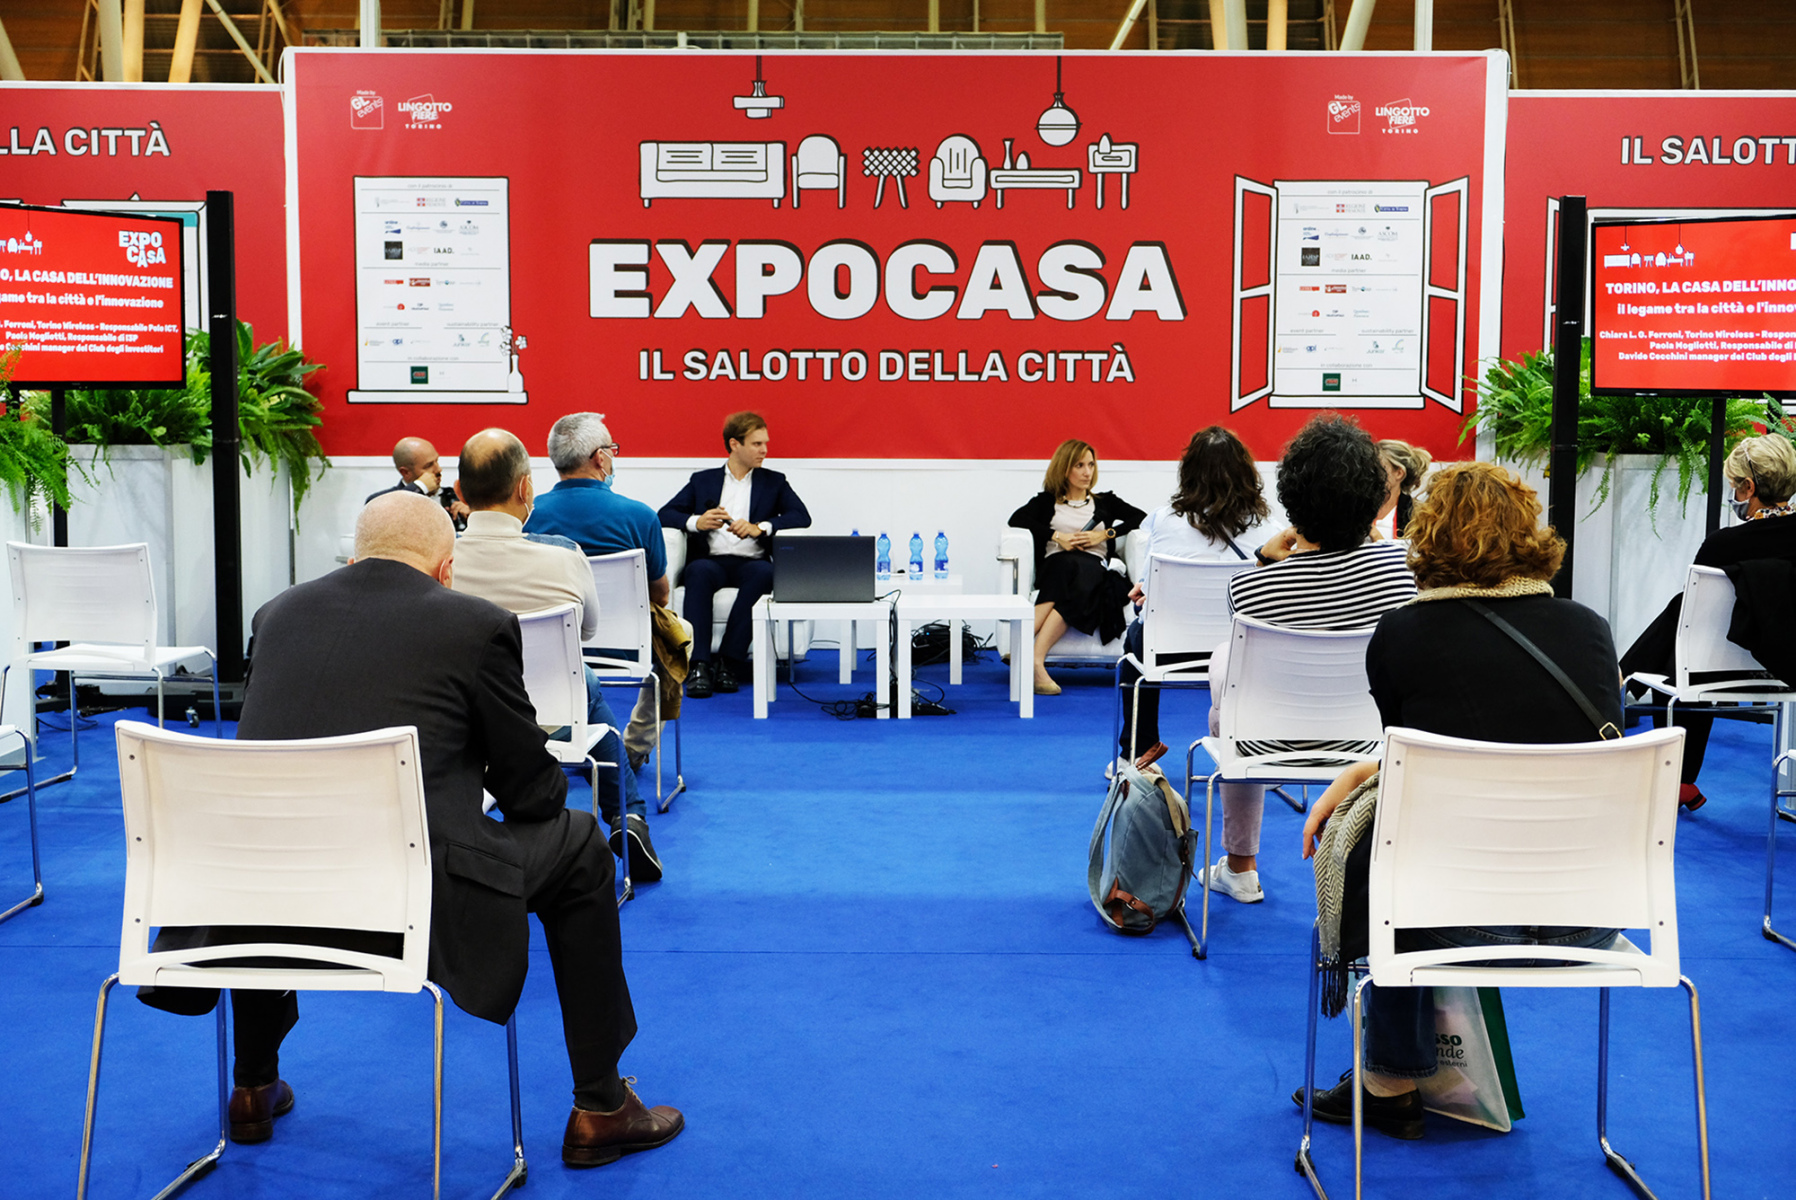 EXPO CASA Torino